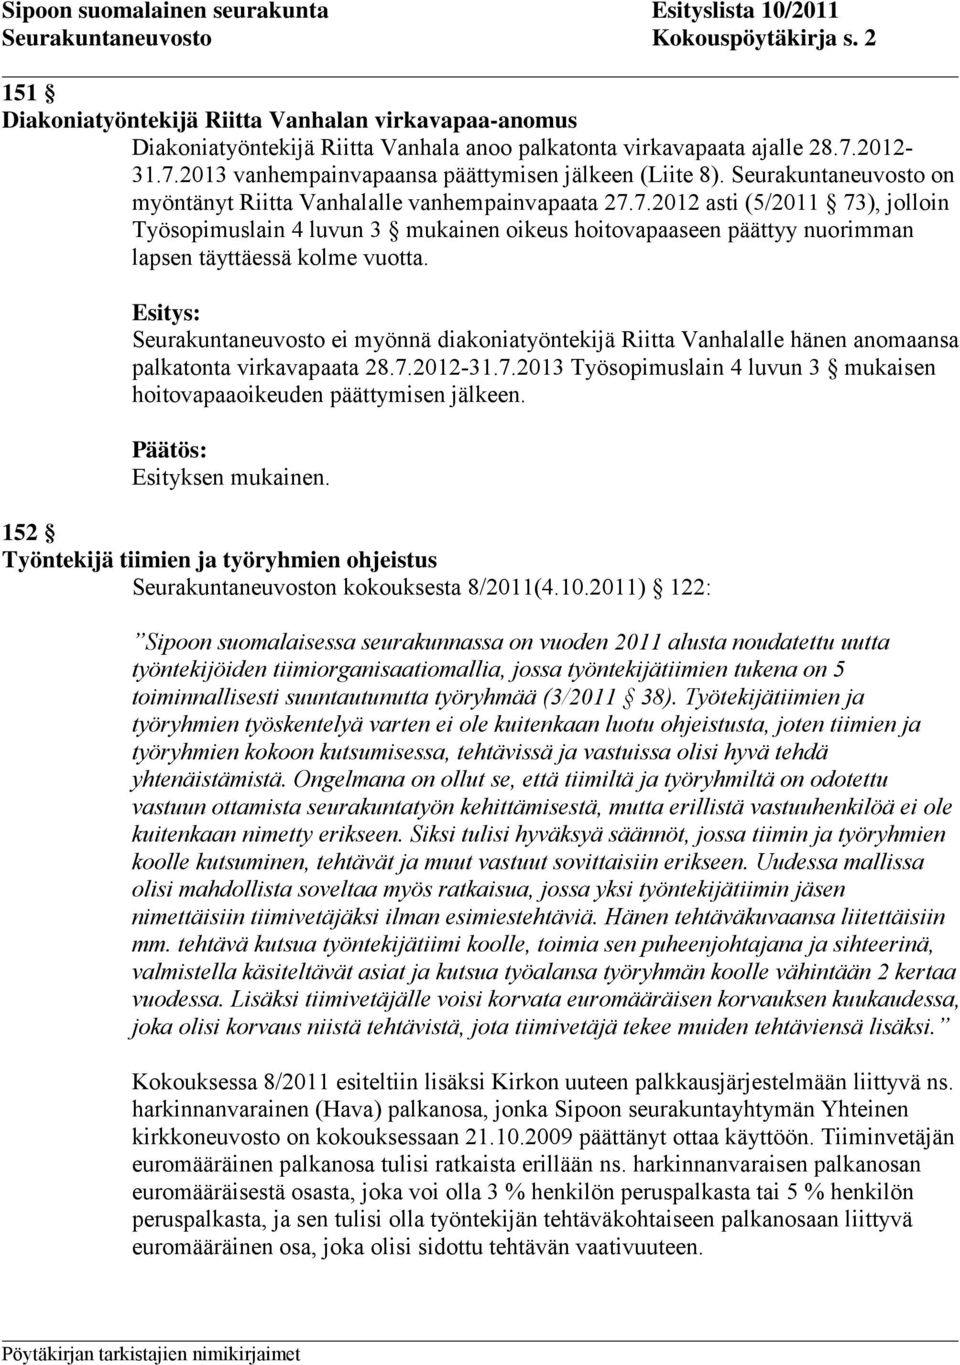 Seurakuntaneuvosto ei myönnä diakoniatyöntekijä Riitta Vanhalalle hänen anomaansa palkatonta virkavapaata 28.7.2012-31.7.2013 Työsopimuslain 4 luvun 3 mukaisen hoitovapaaoikeuden päättymisen jälkeen.